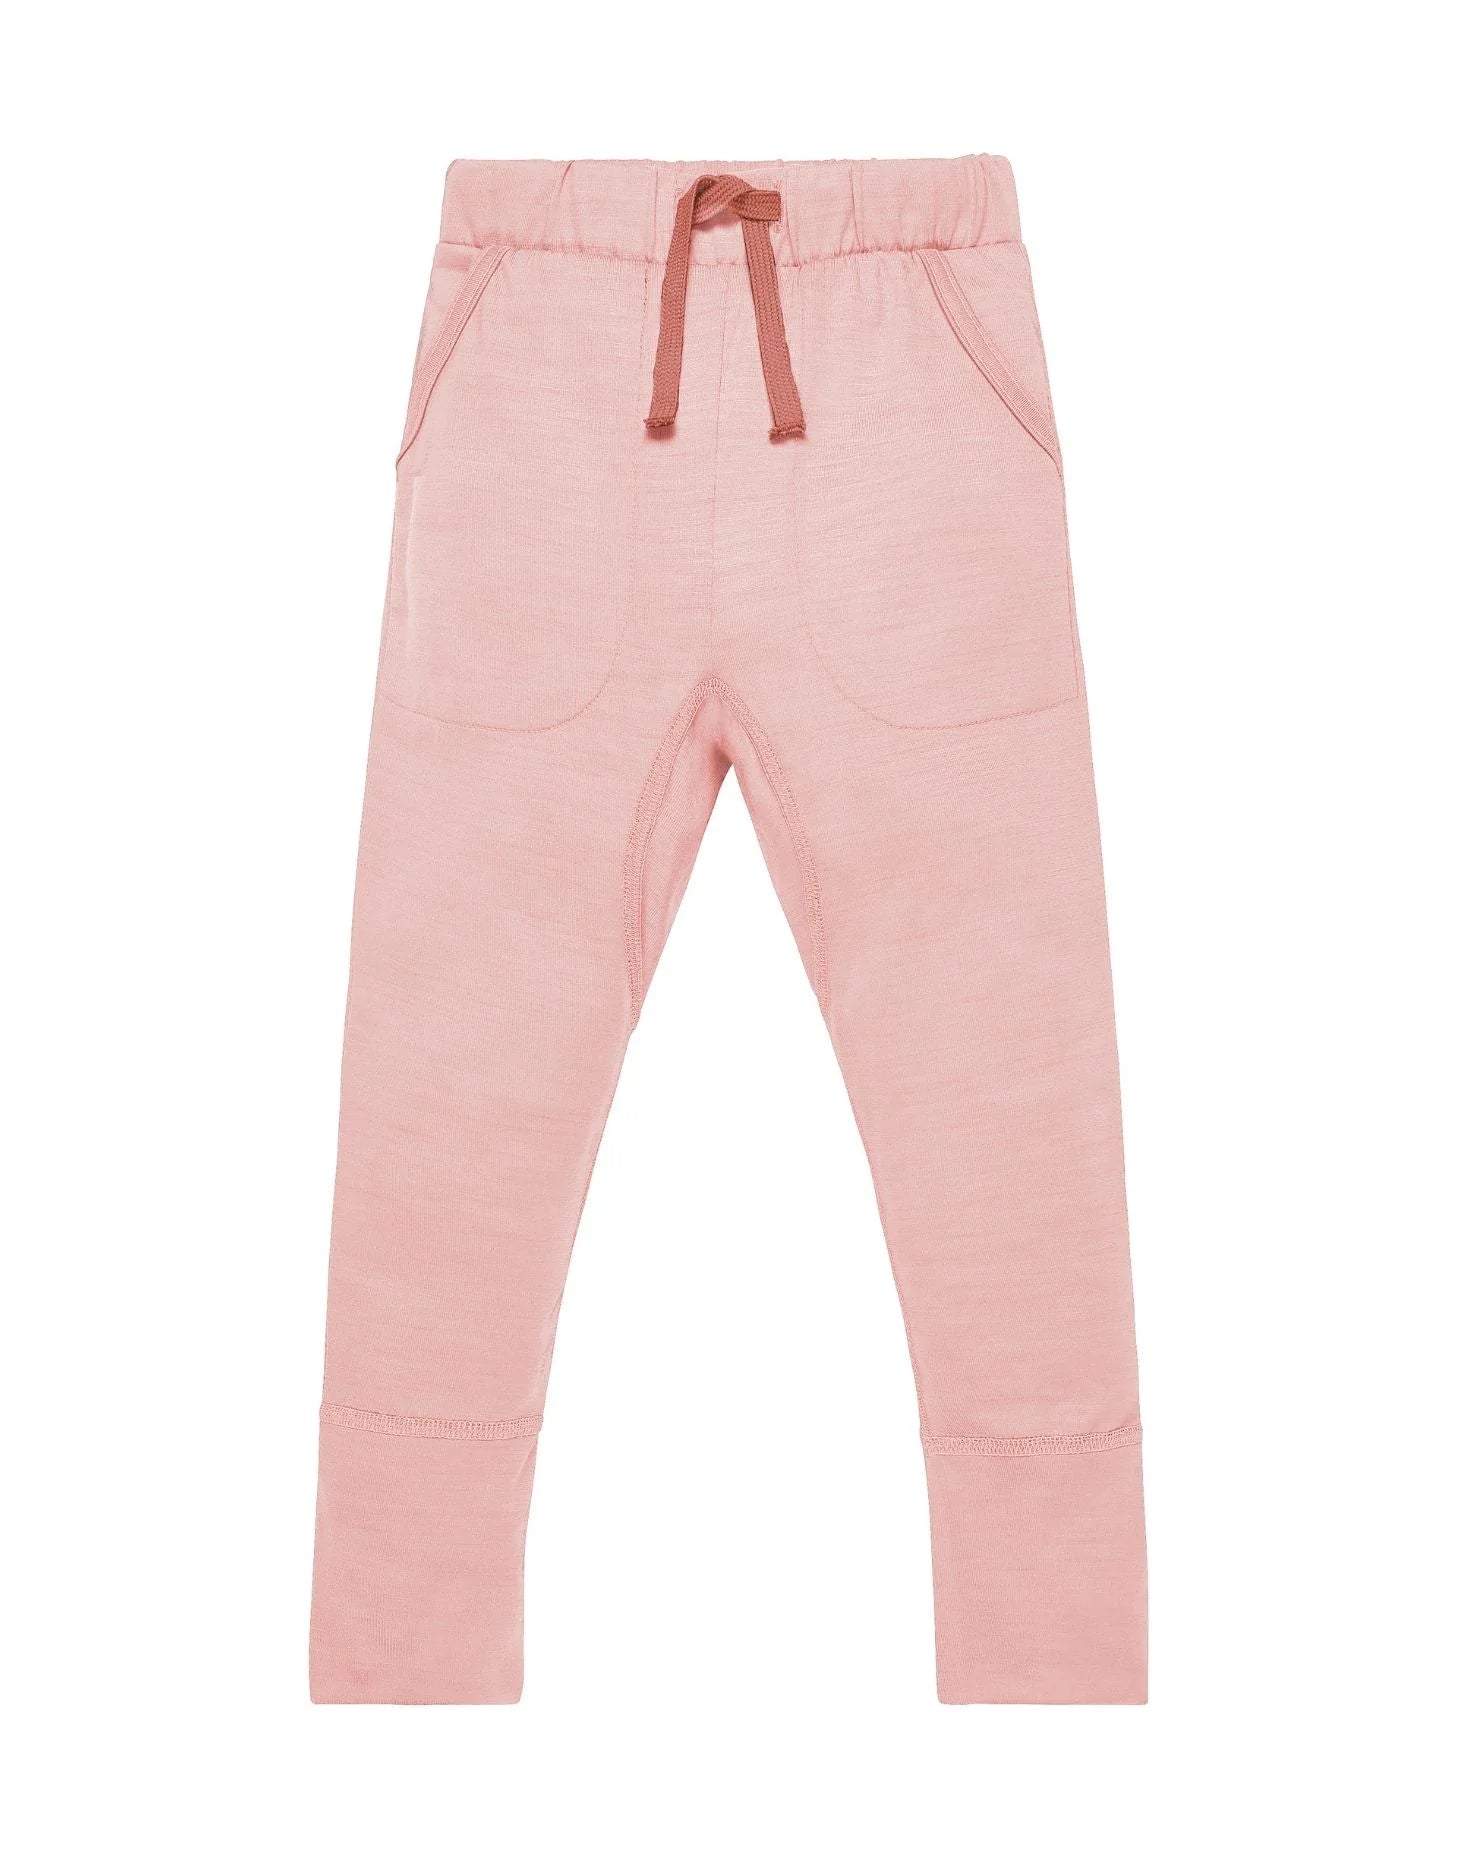 Smalls Merino The 24hr Trouser | Pink Peach Blossom